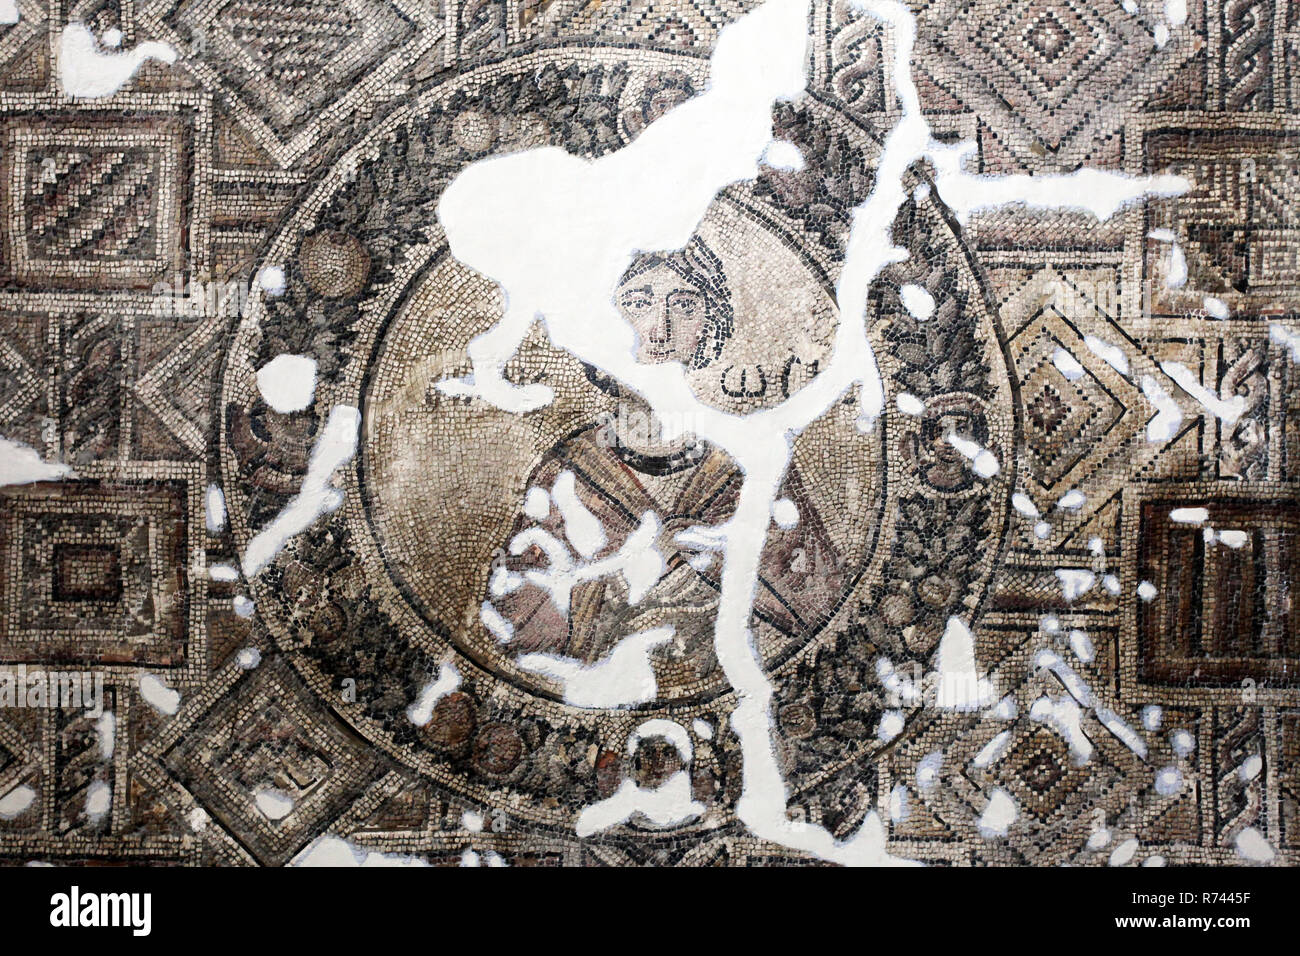 Mosaïques romaines au Musée Archéologique d'Hatay à Antakya (Antioche), Turquie. Musée Archéologique d'Hatay maisons est grande époque romaine et byzantine mosaïques. Banque D'Images